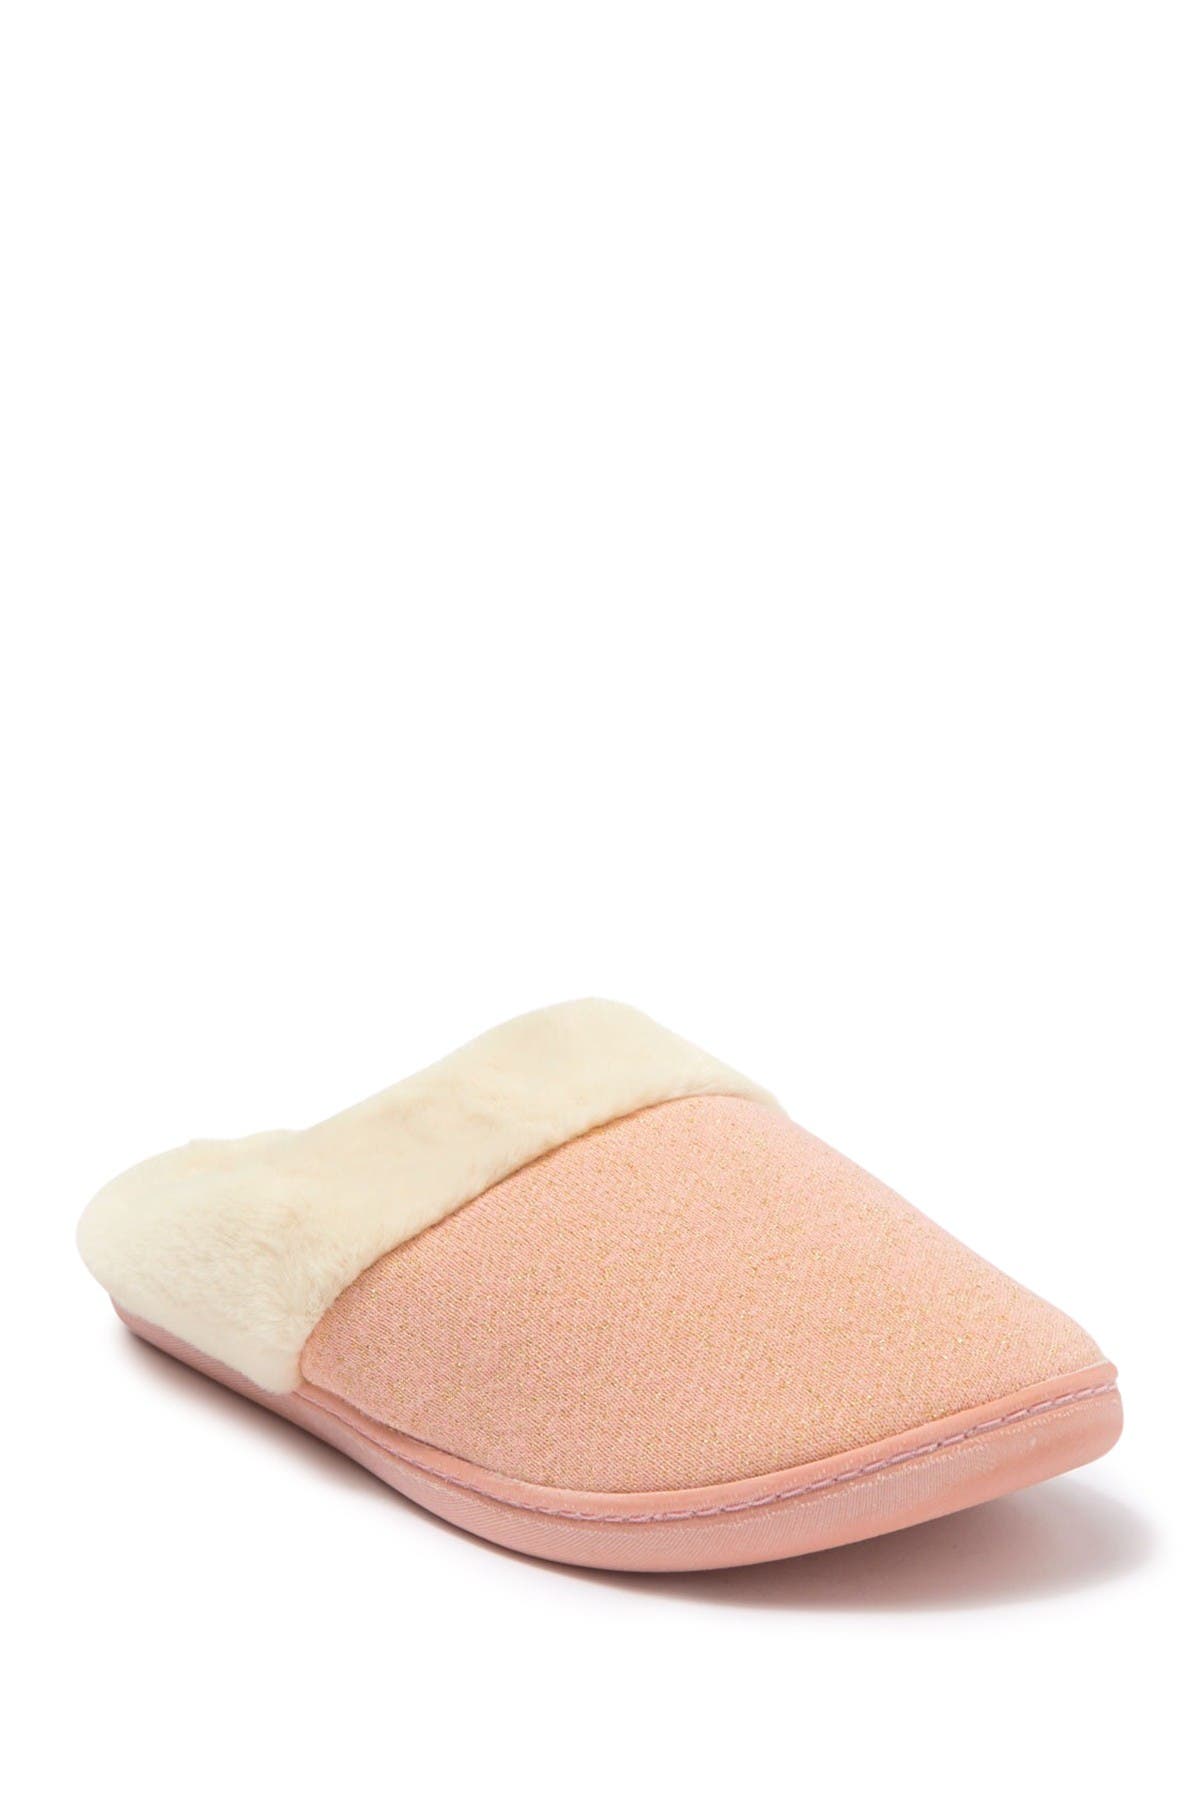 nordstrom rack womens slippers